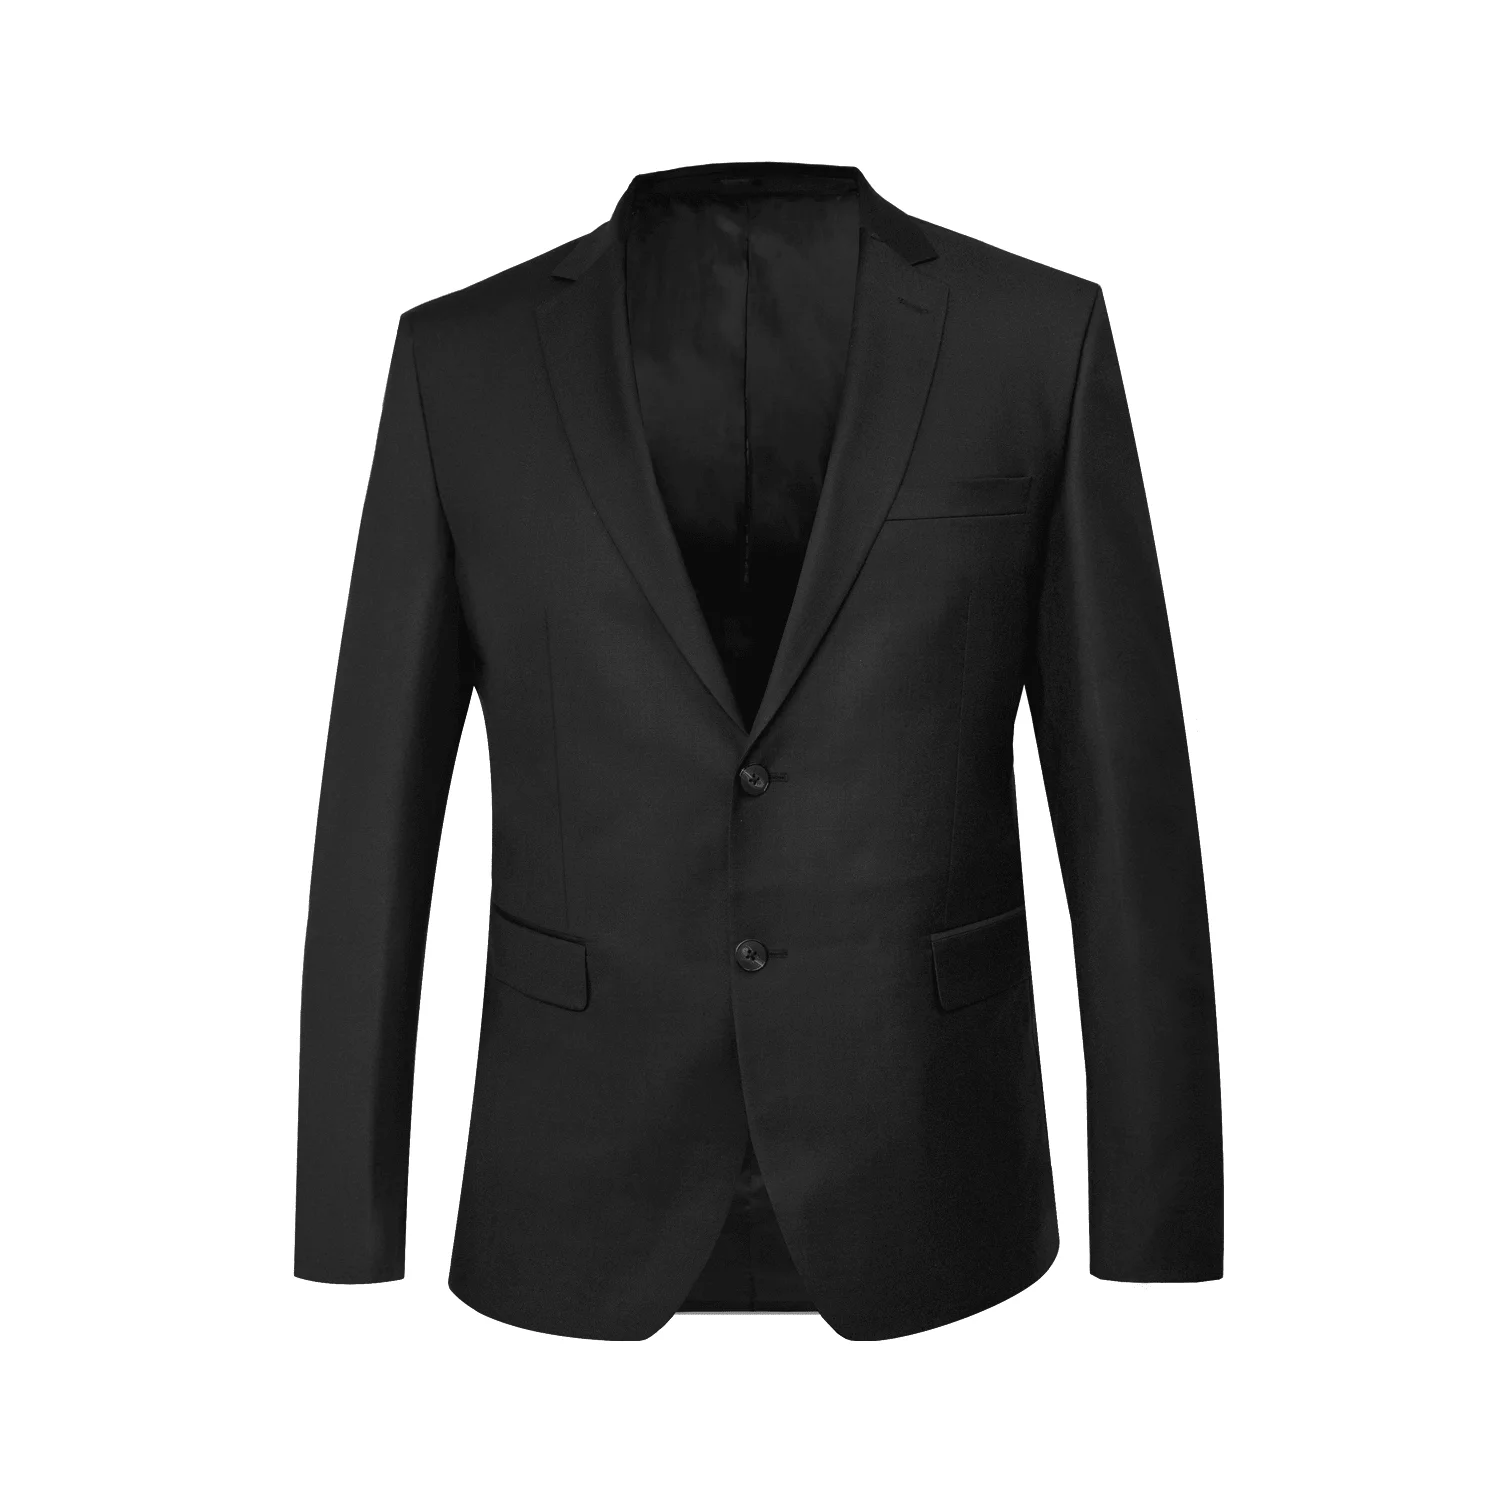 Bold Black Suit - Snover